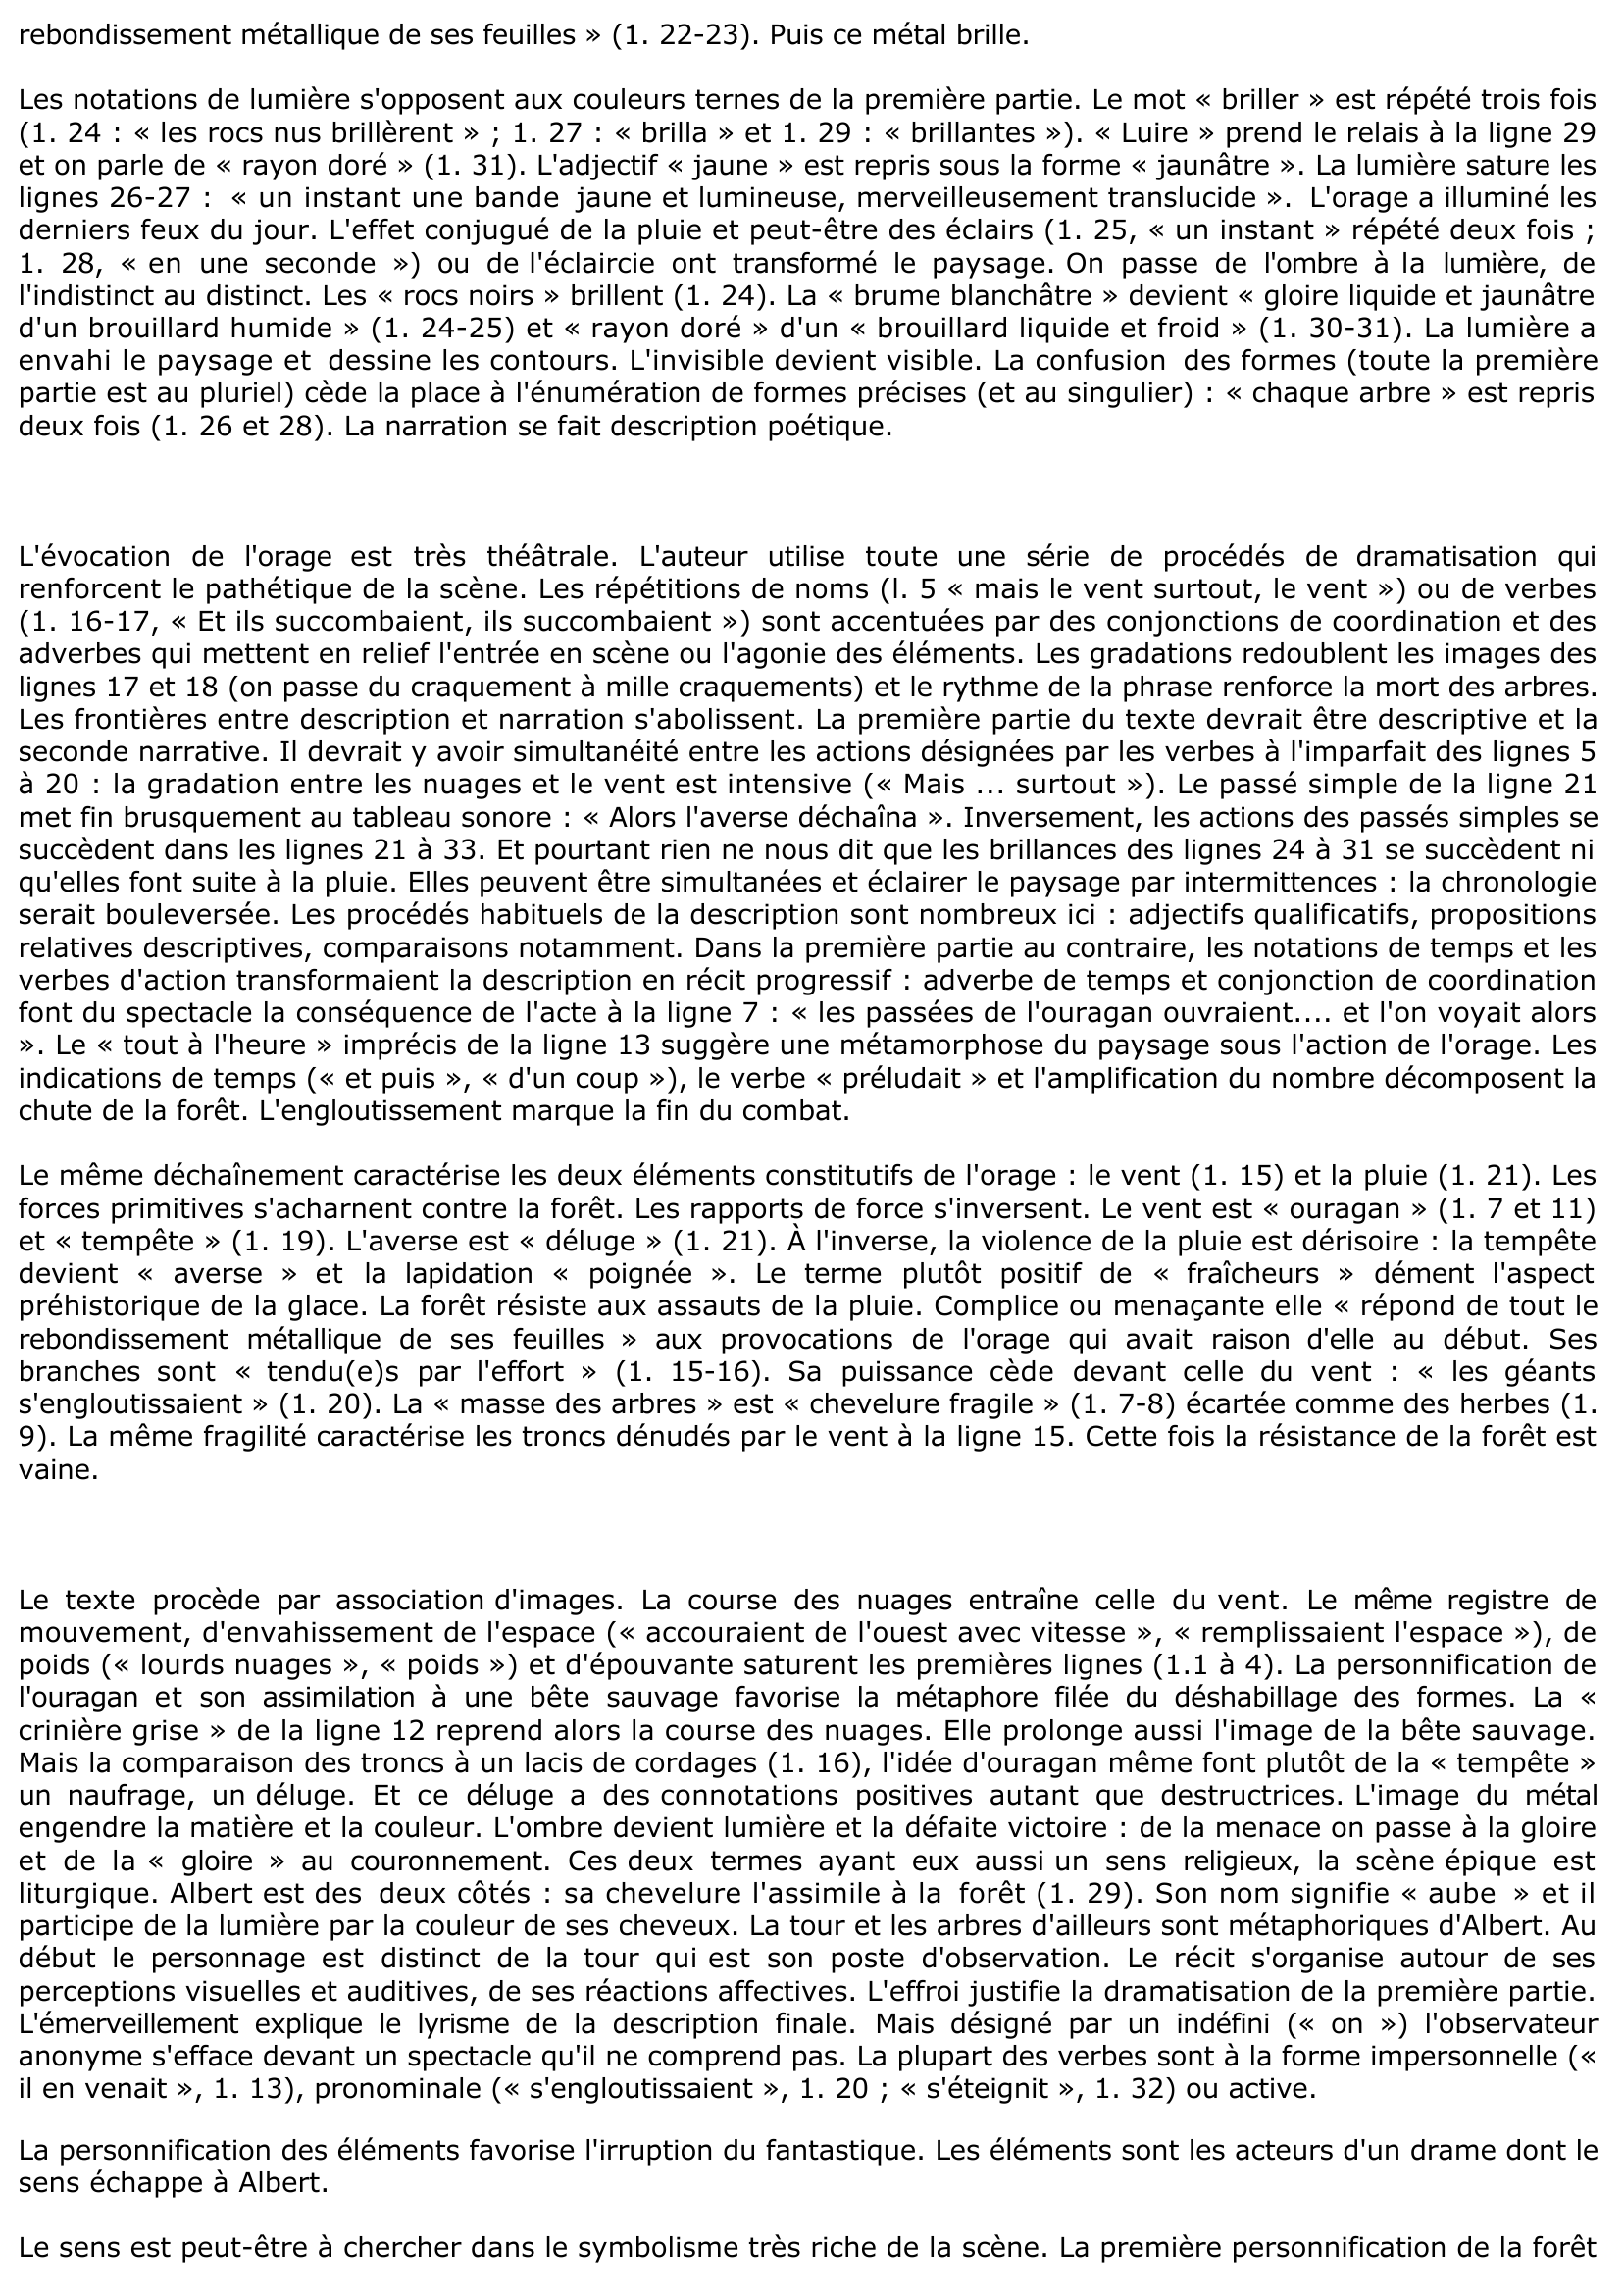 Prévisualisation du document Julien Gracq (Au château d'Argol): Des hauteurs du château d'Argol, Albert contemple la plaine de Storrvan